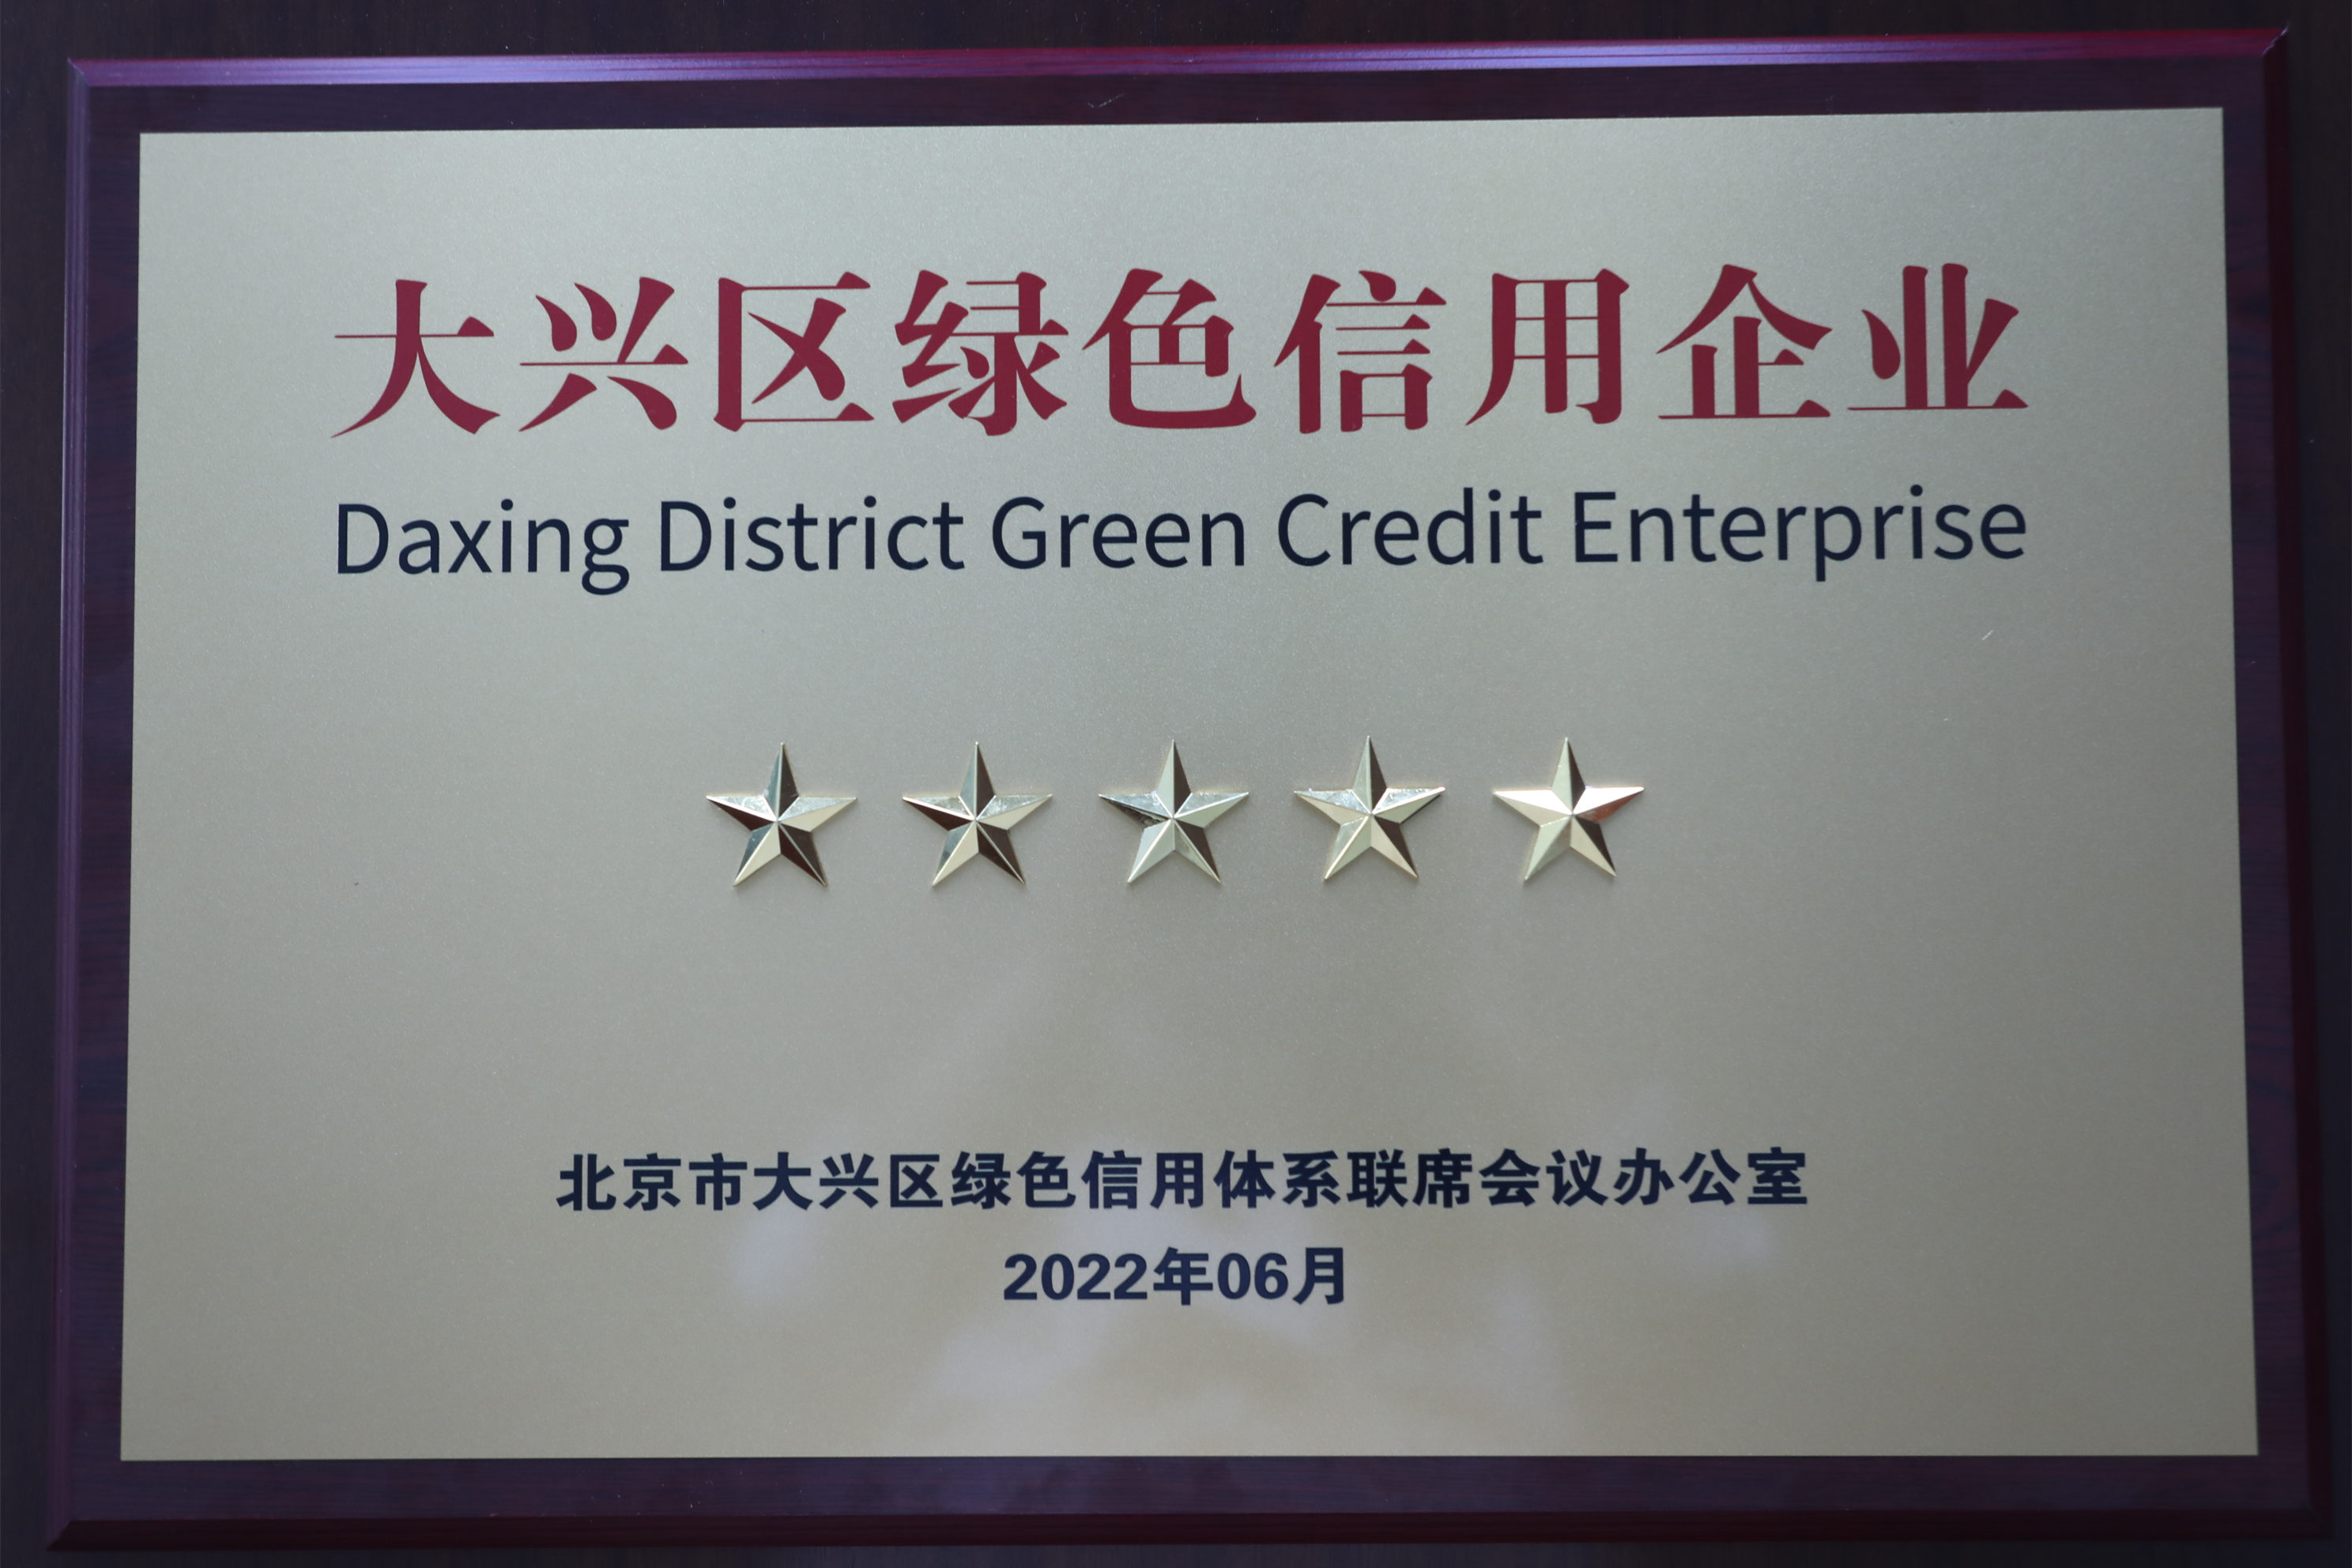 澳门新莆京游戏大厅2023获评大兴区“绿色信用五星级企业”